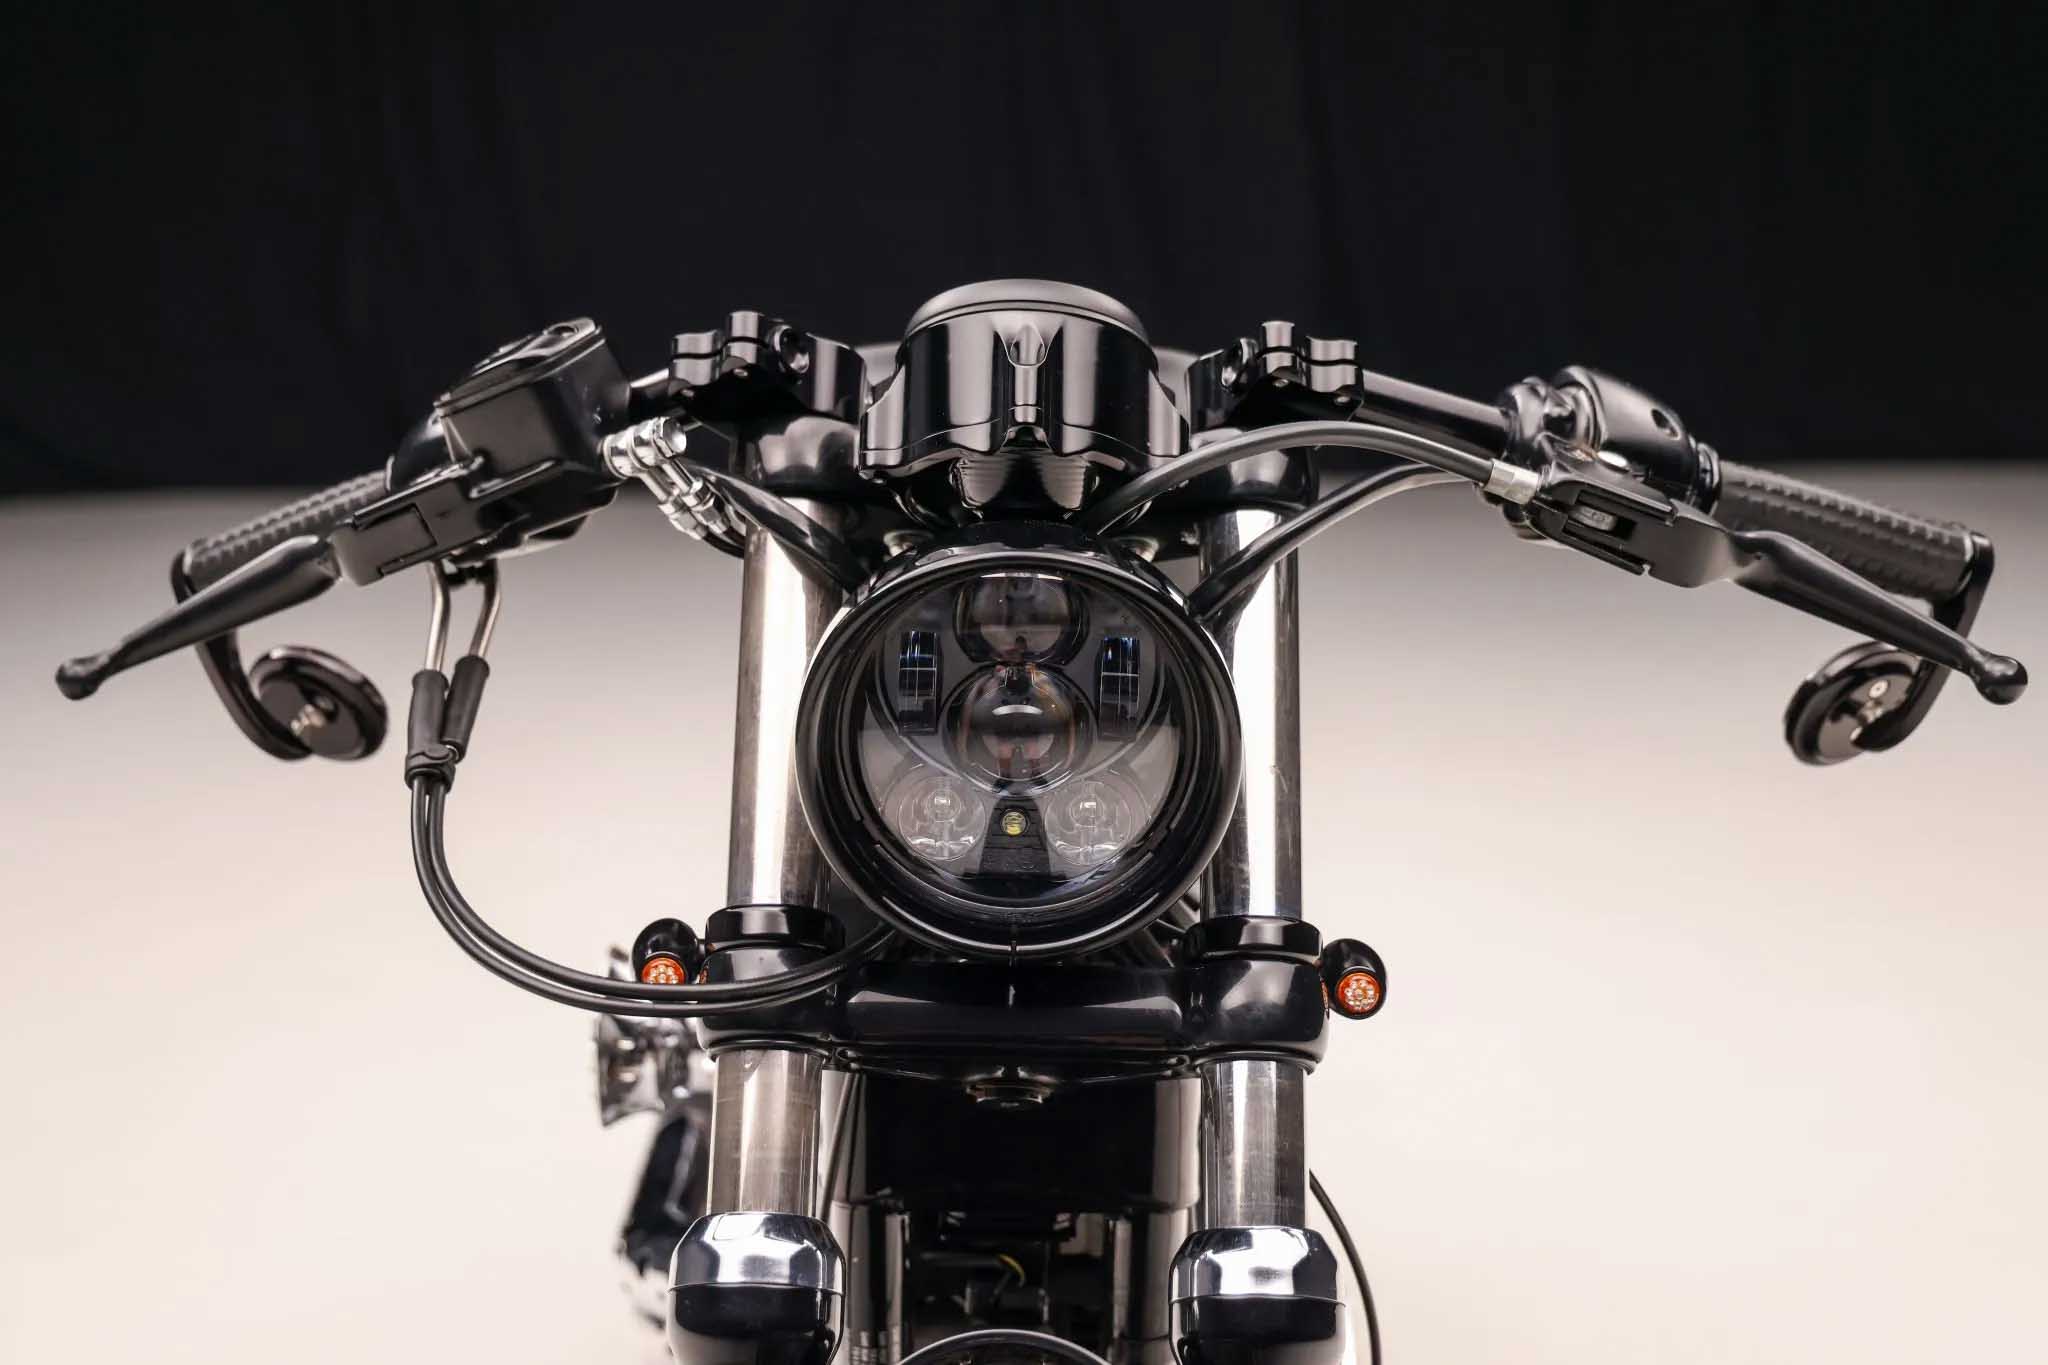 Harley-Davidson-Roadster-restomod-café-racer